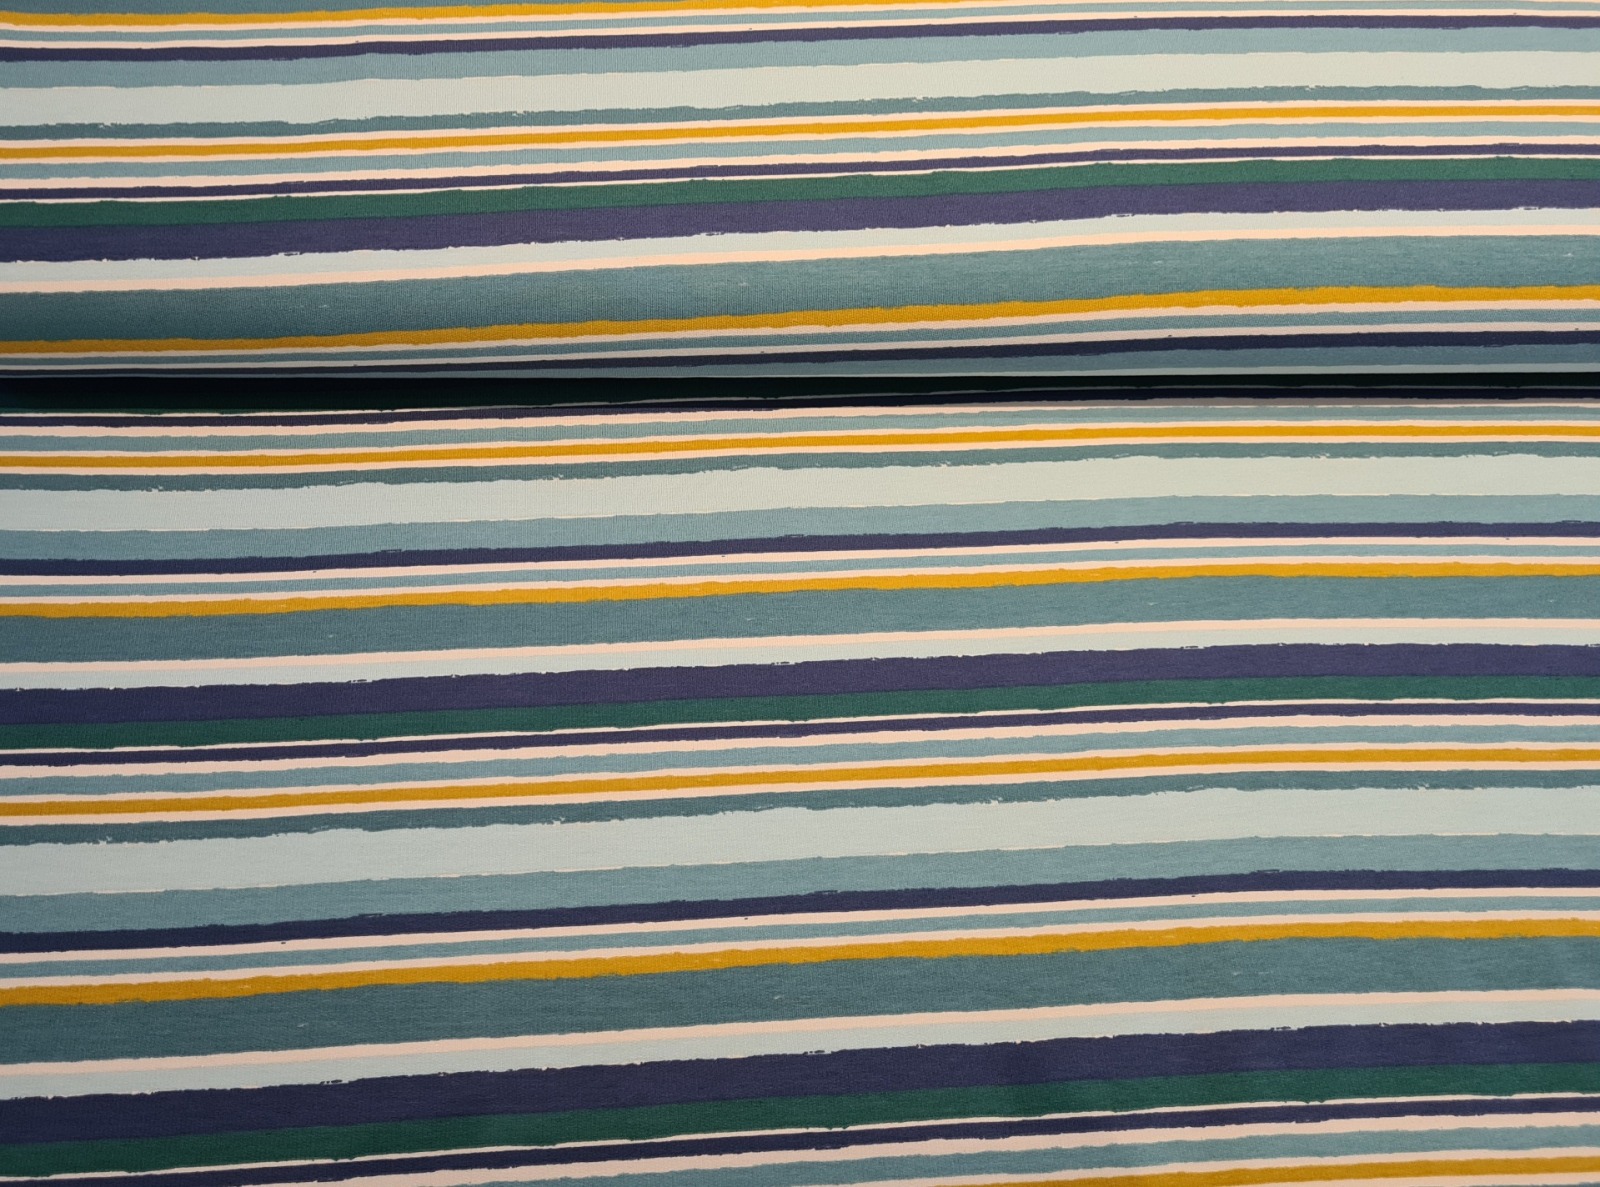 French Terry Stripes Streifen pastell blau Töne